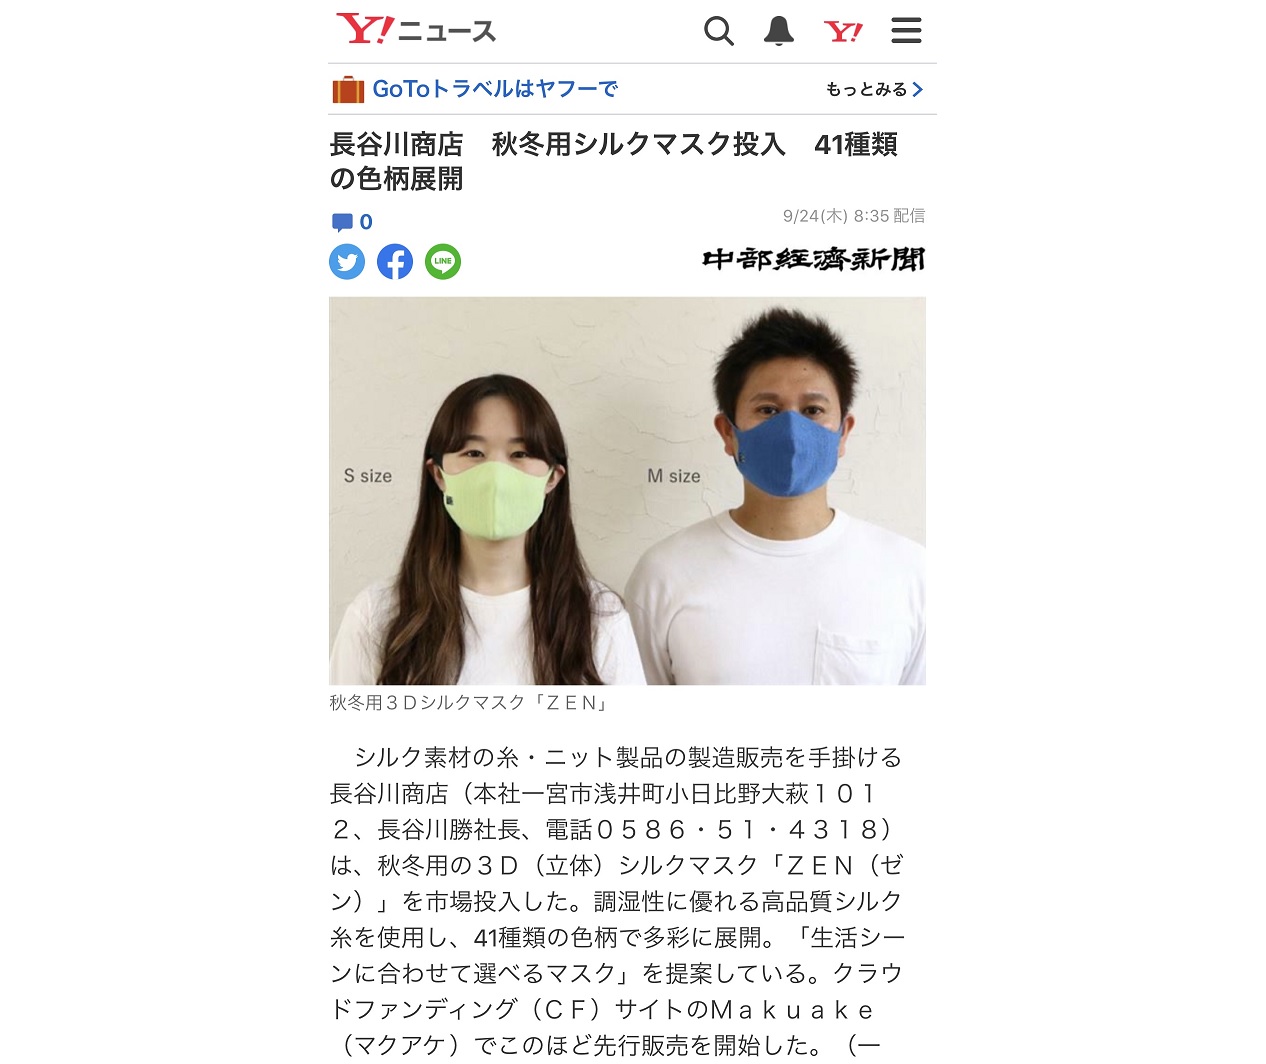 中部経済新聞・YAHOOニュース 掲載